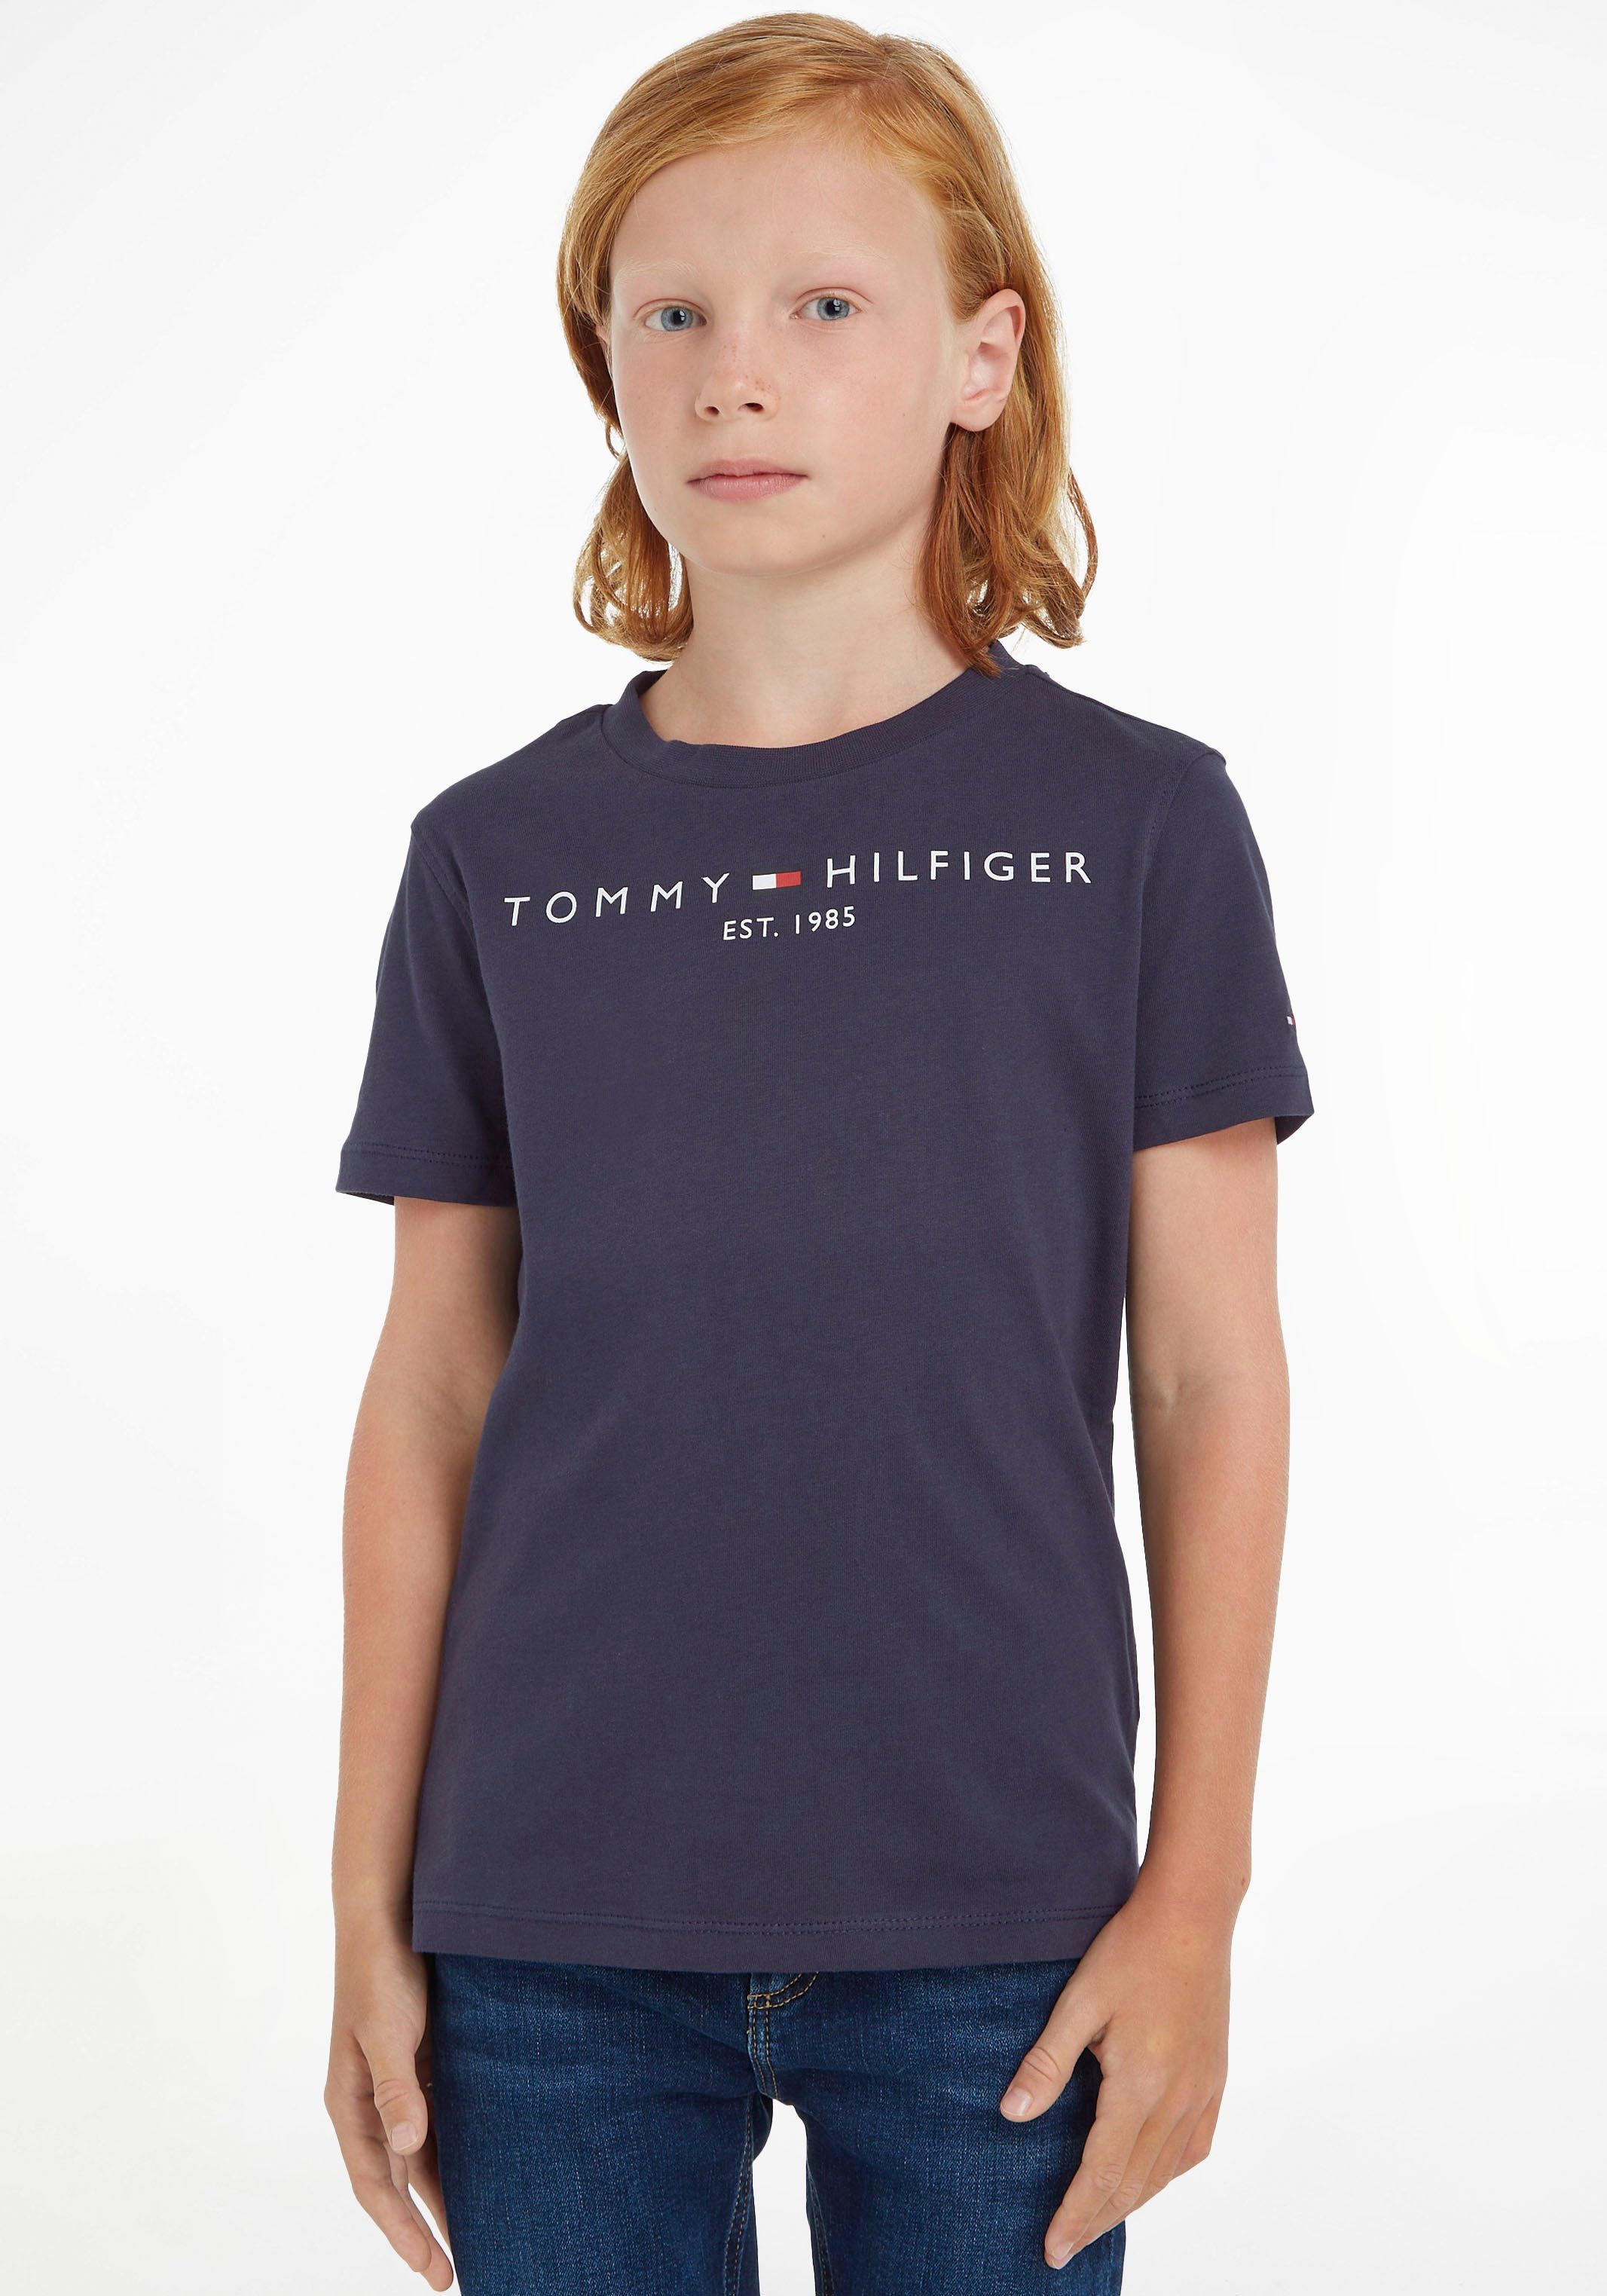 Tommy Hilfiger T-Shirt ESSENTIAL TEE Kinder Kids Junior MiniMe,für Jungen  und Mädchen, Hinten mit kleinem Flaglabel am Ausschnitt